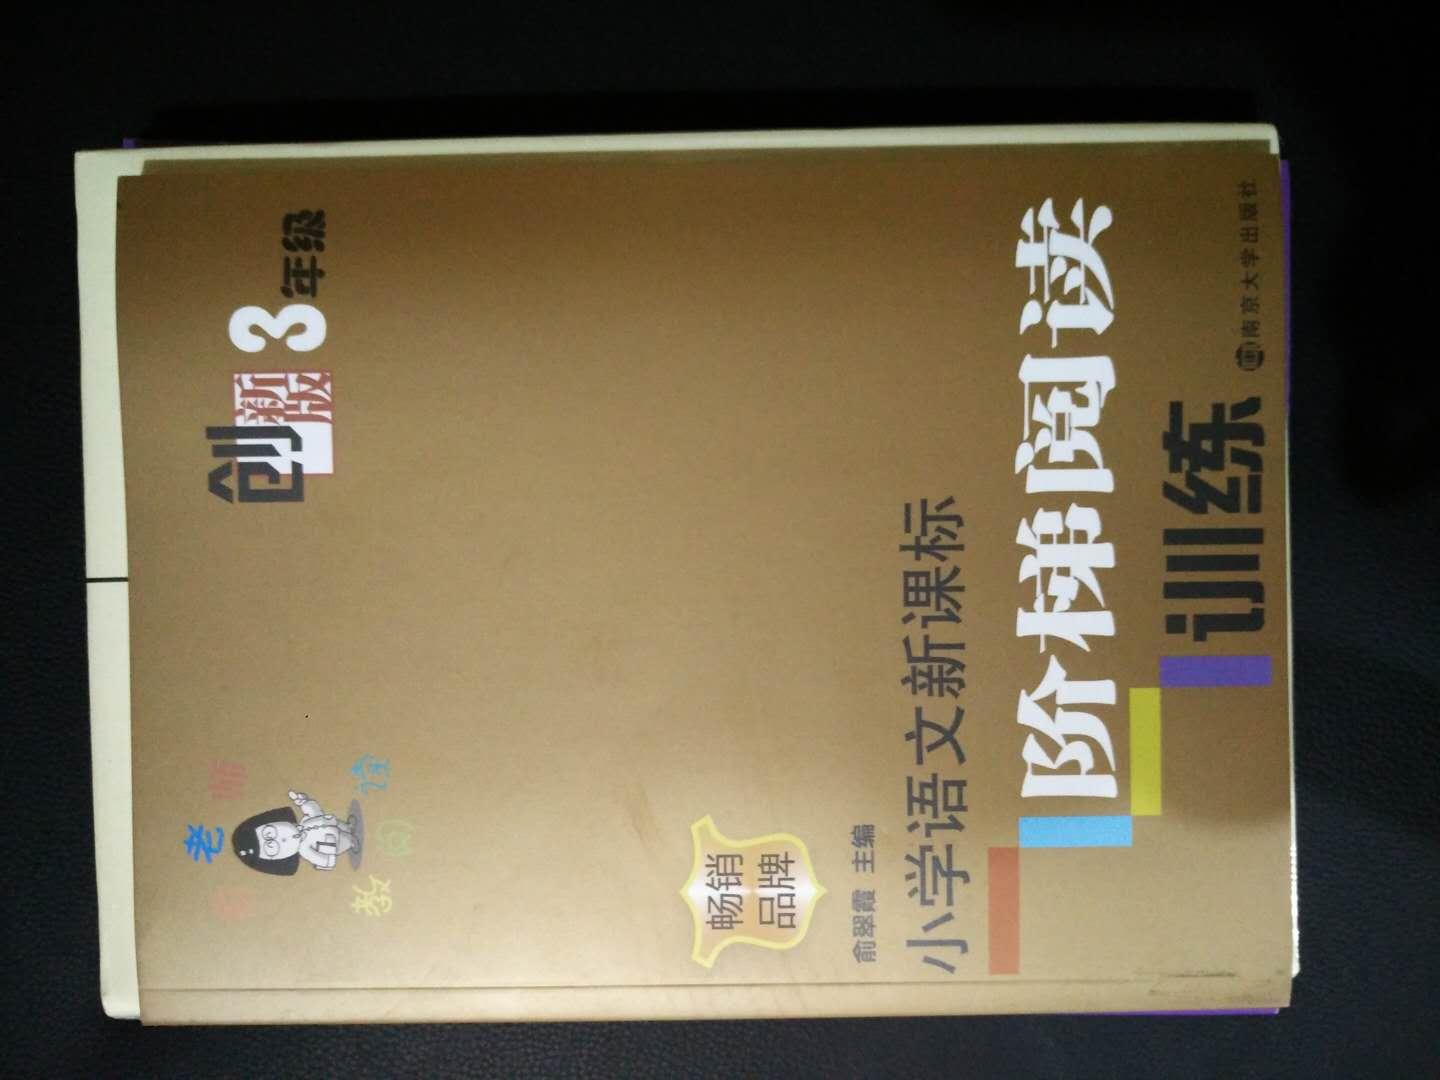 下学期三年级了，凑单先买了吧，北京版的卖的很少，这套卷子还是不错的。